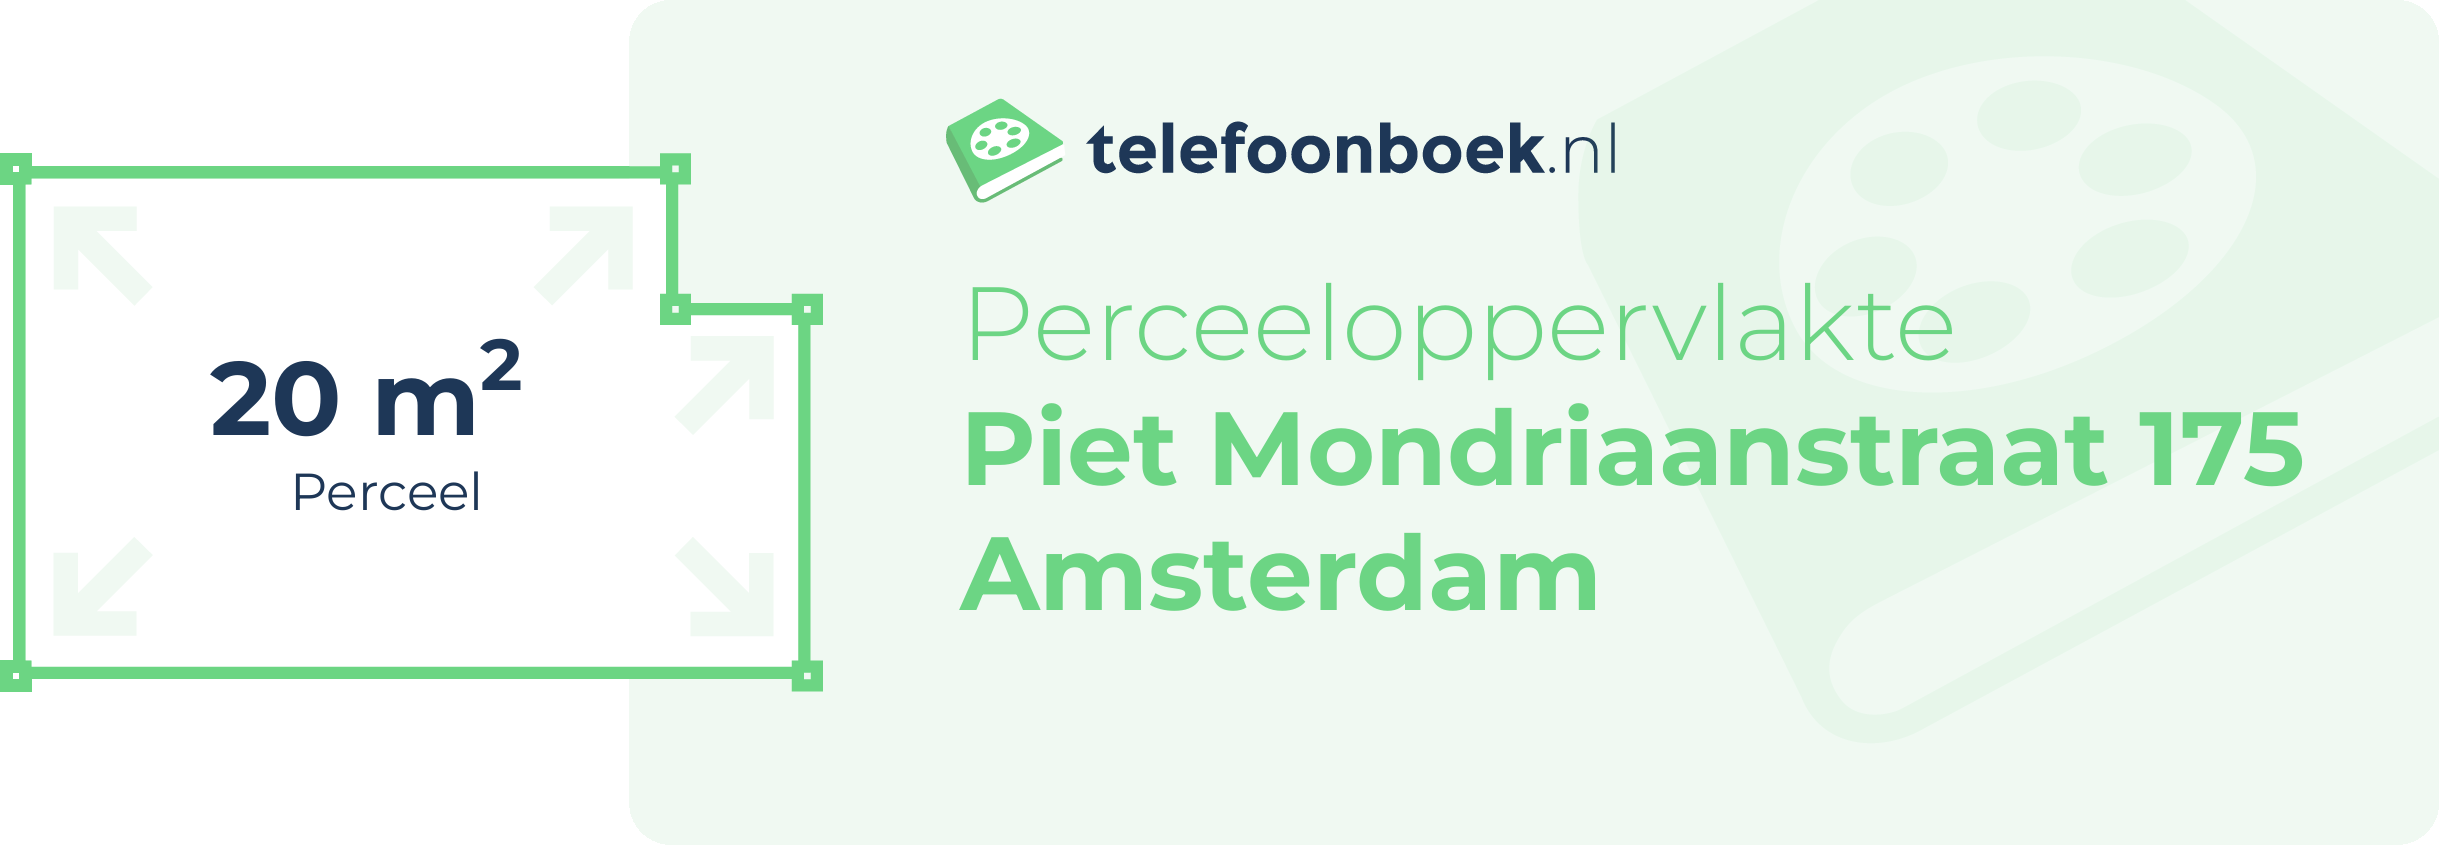 Perceeloppervlakte Piet Mondriaanstraat 175 Amsterdam